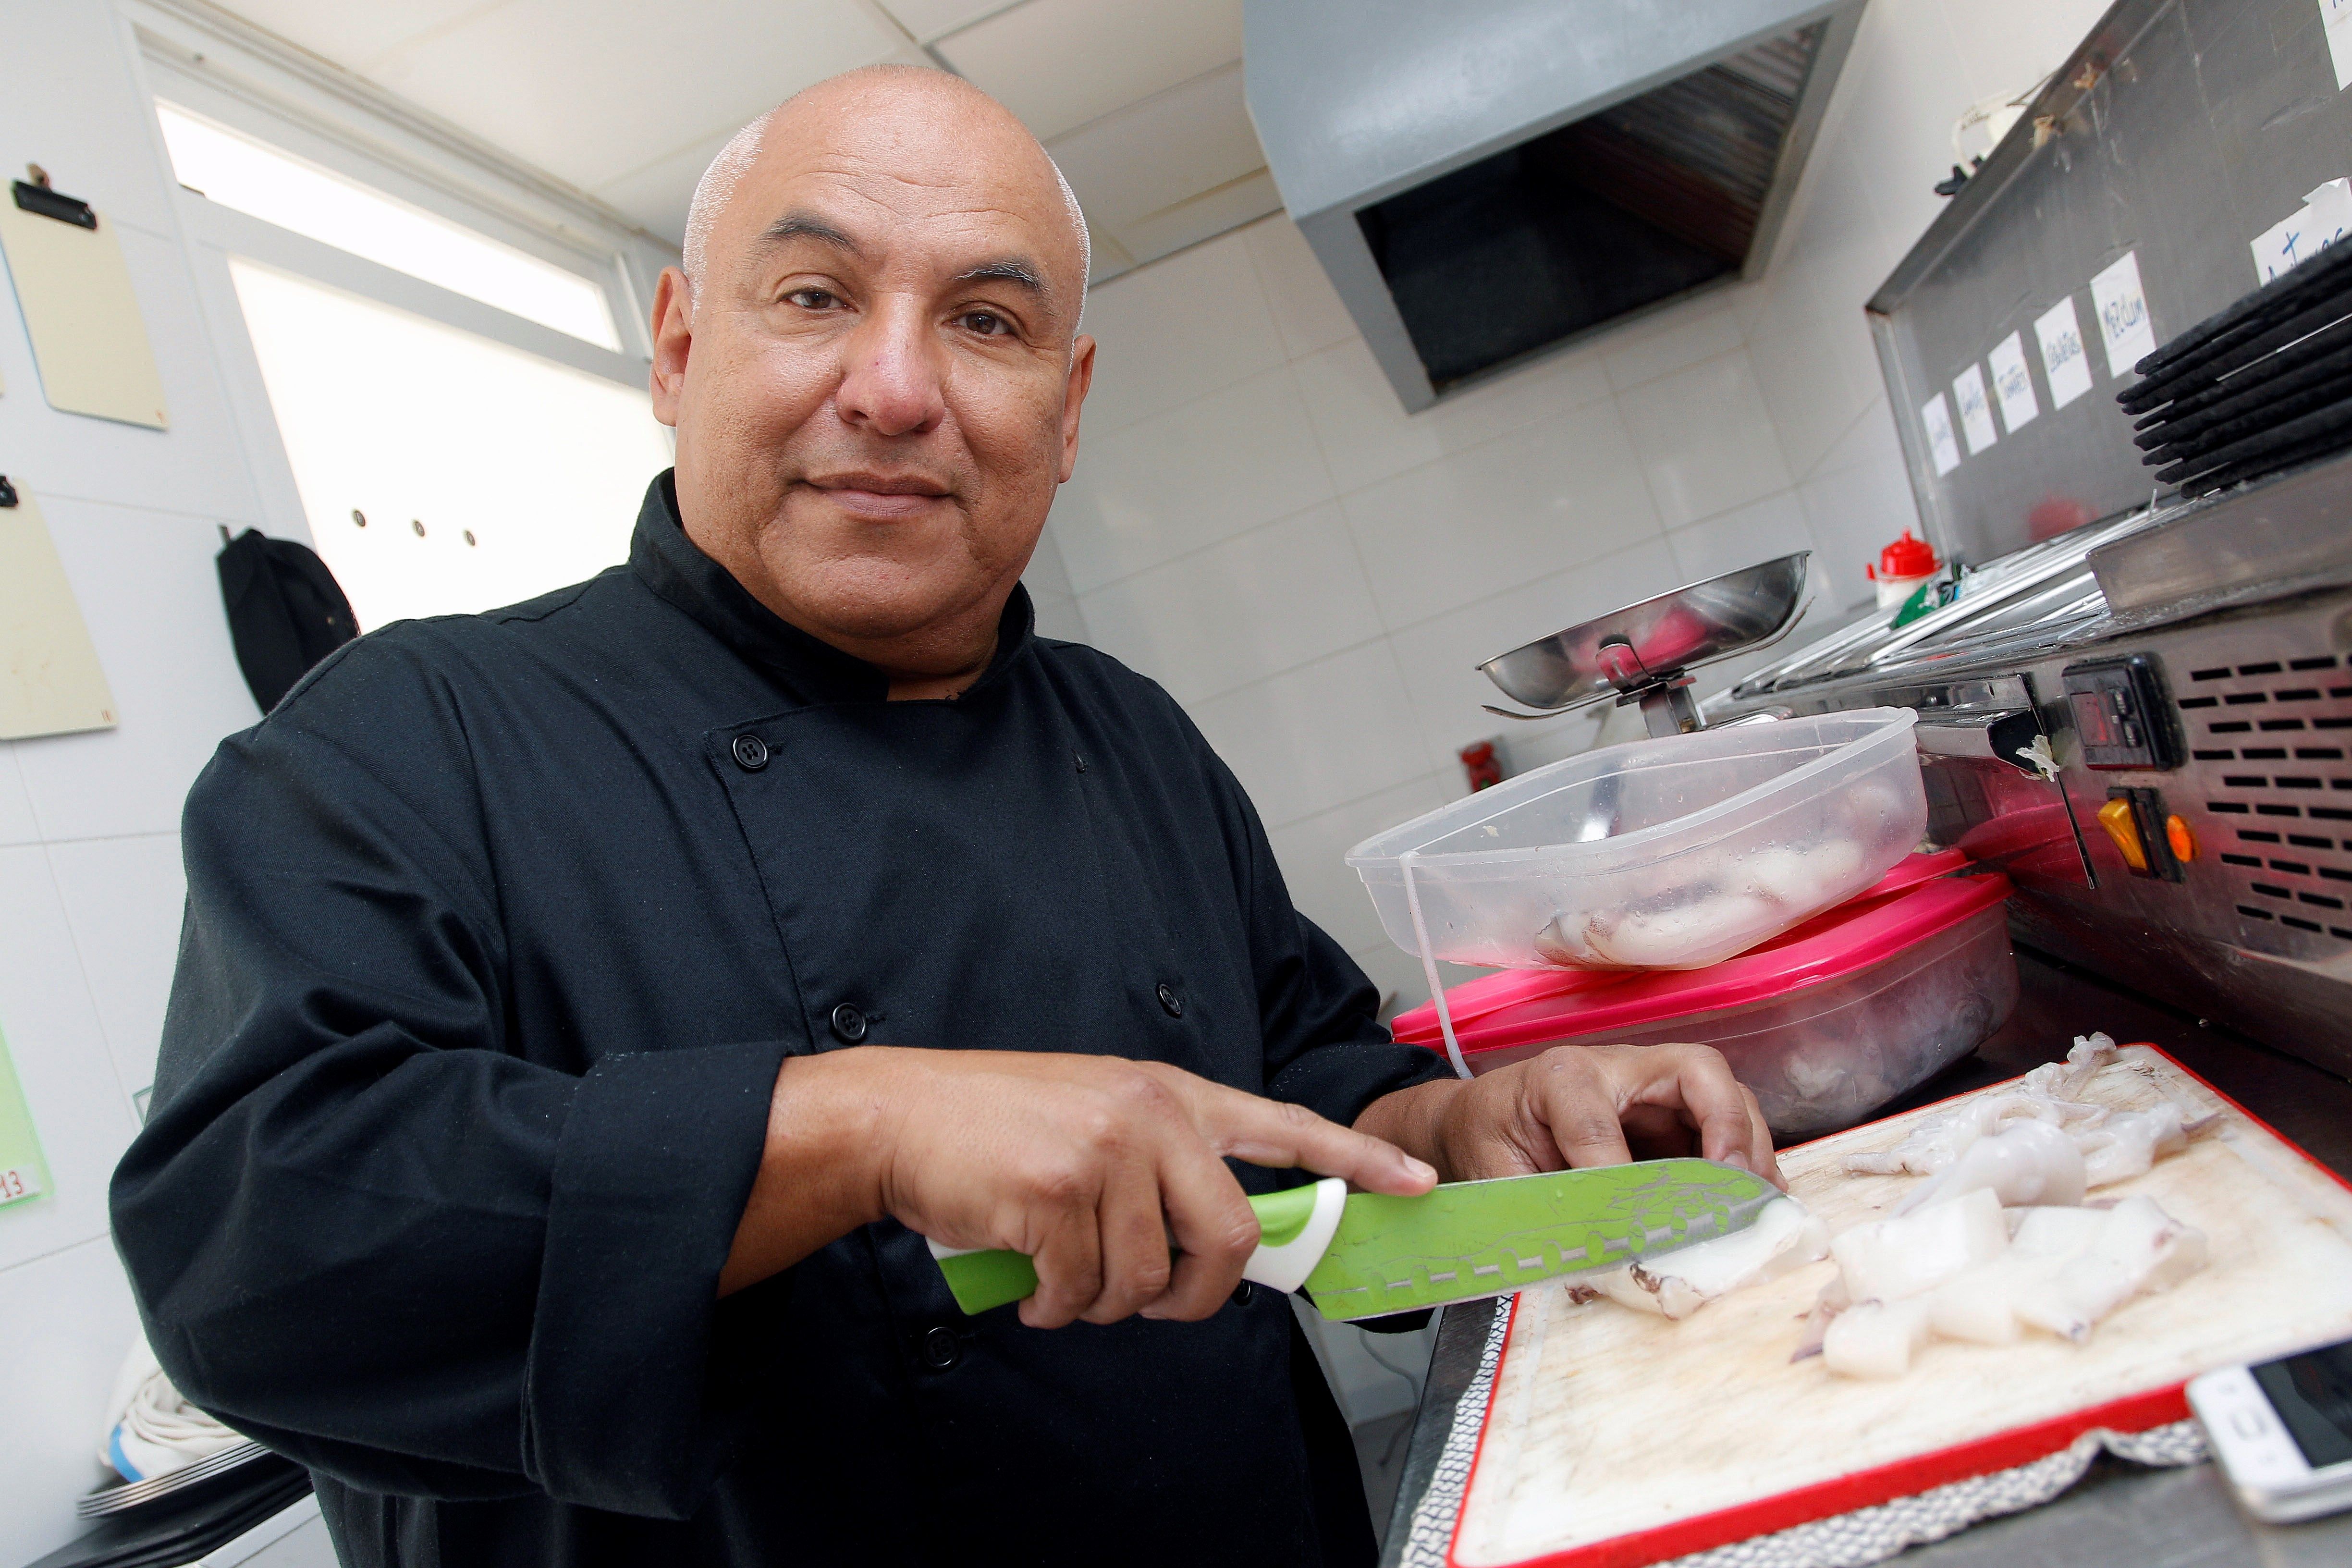 De fiscal en Venezuela a ayudante de cocina: Empezar de cero a los 50 años (Fotos)